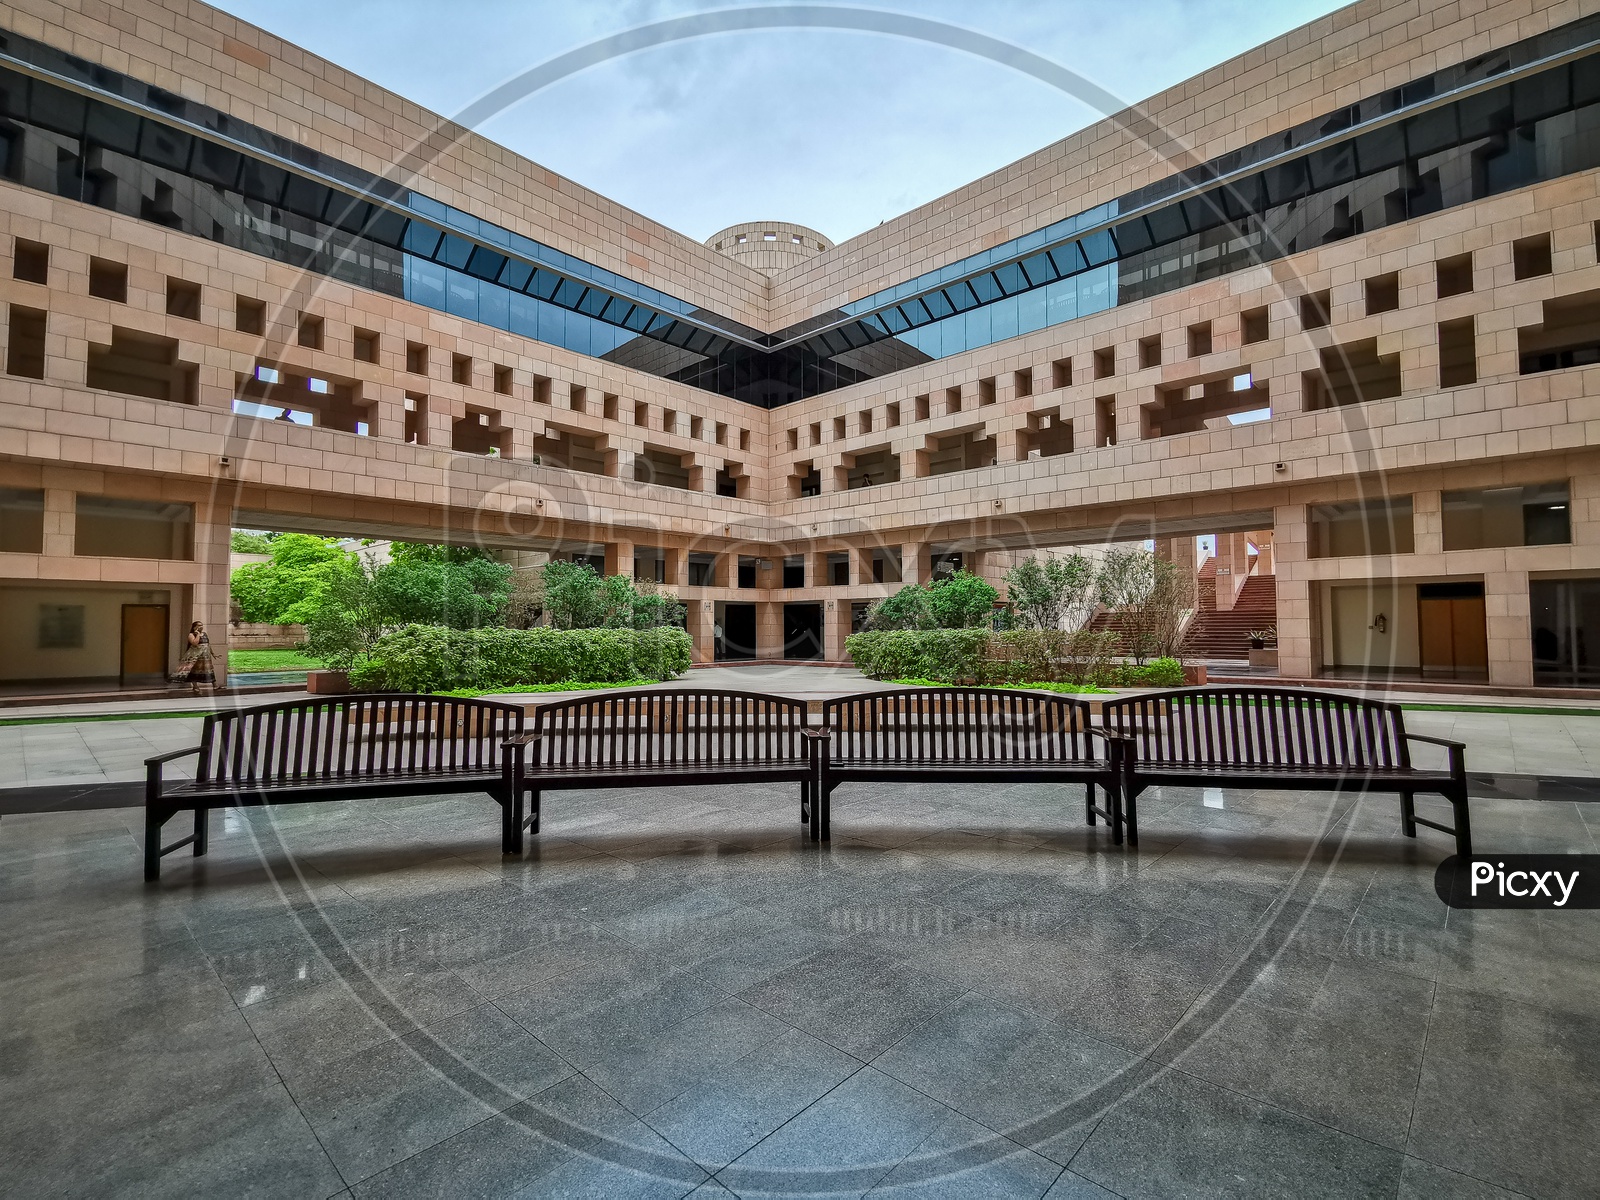 Atrium in in ISB (Indian School of Business) Campus